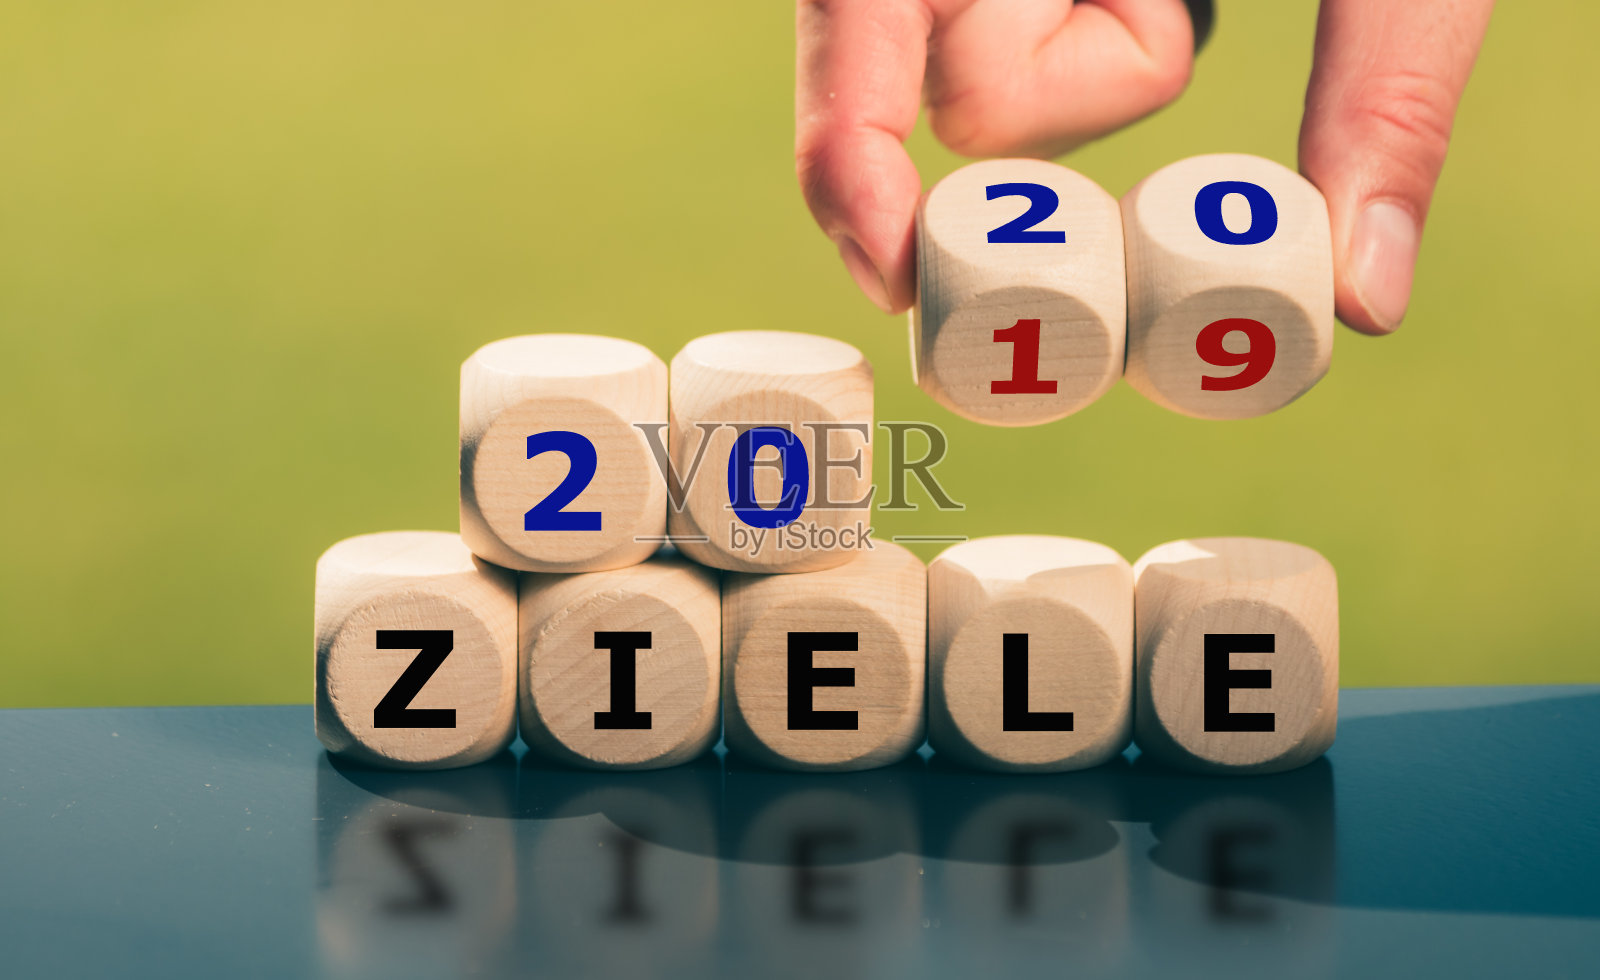 2020年的目标。手转骰子，改变德语表达“2019 Ziele”(英语“2019目标”)到“2020 Ziele”(英语“2020目标”)。照片摄影图片